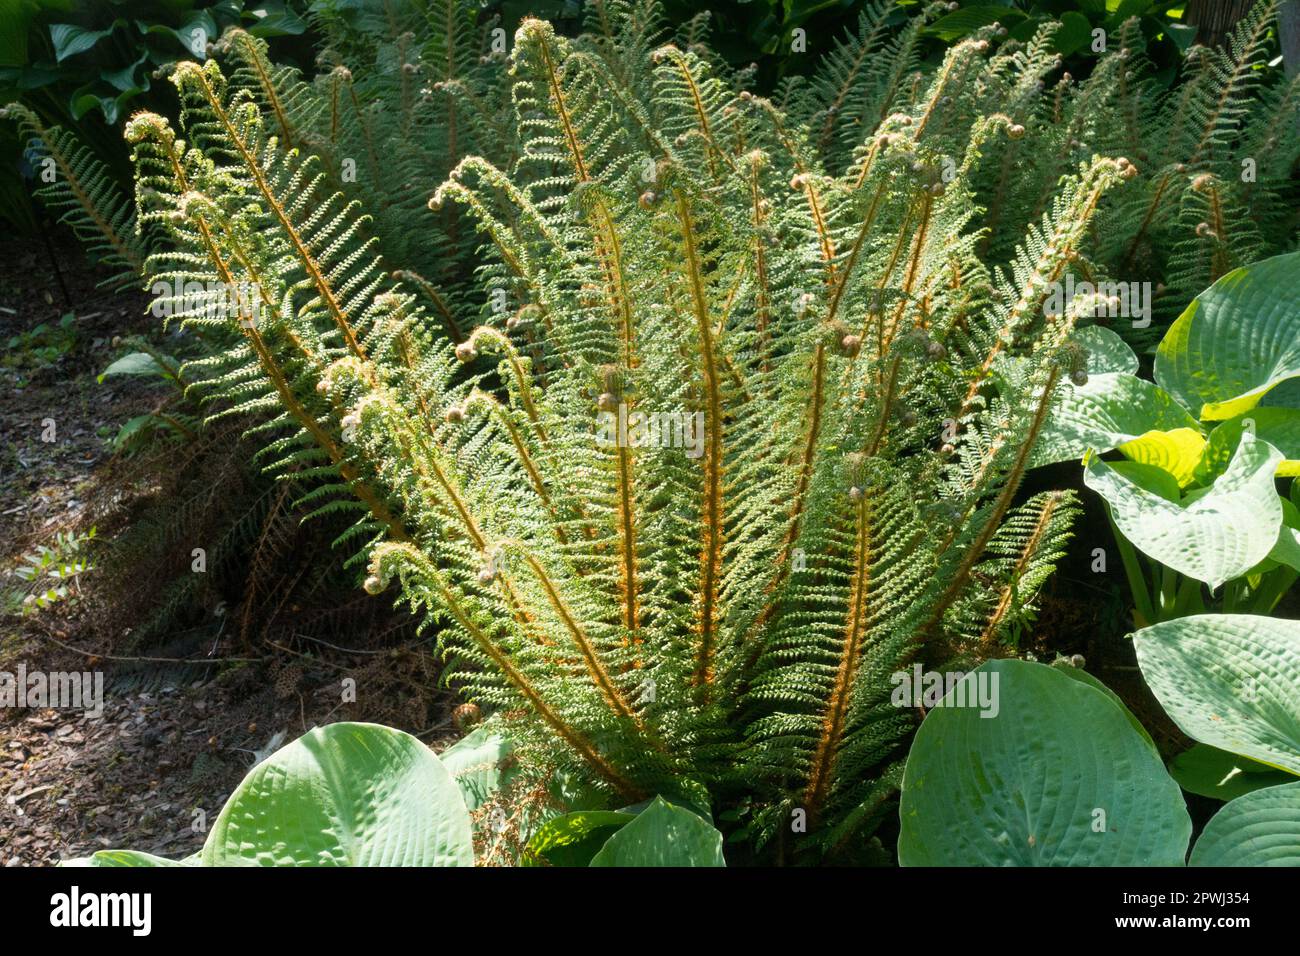 Soft Shield Fern, Polystichum setiferum 'Plumosum Densum' shady spot in garden Stock Photo